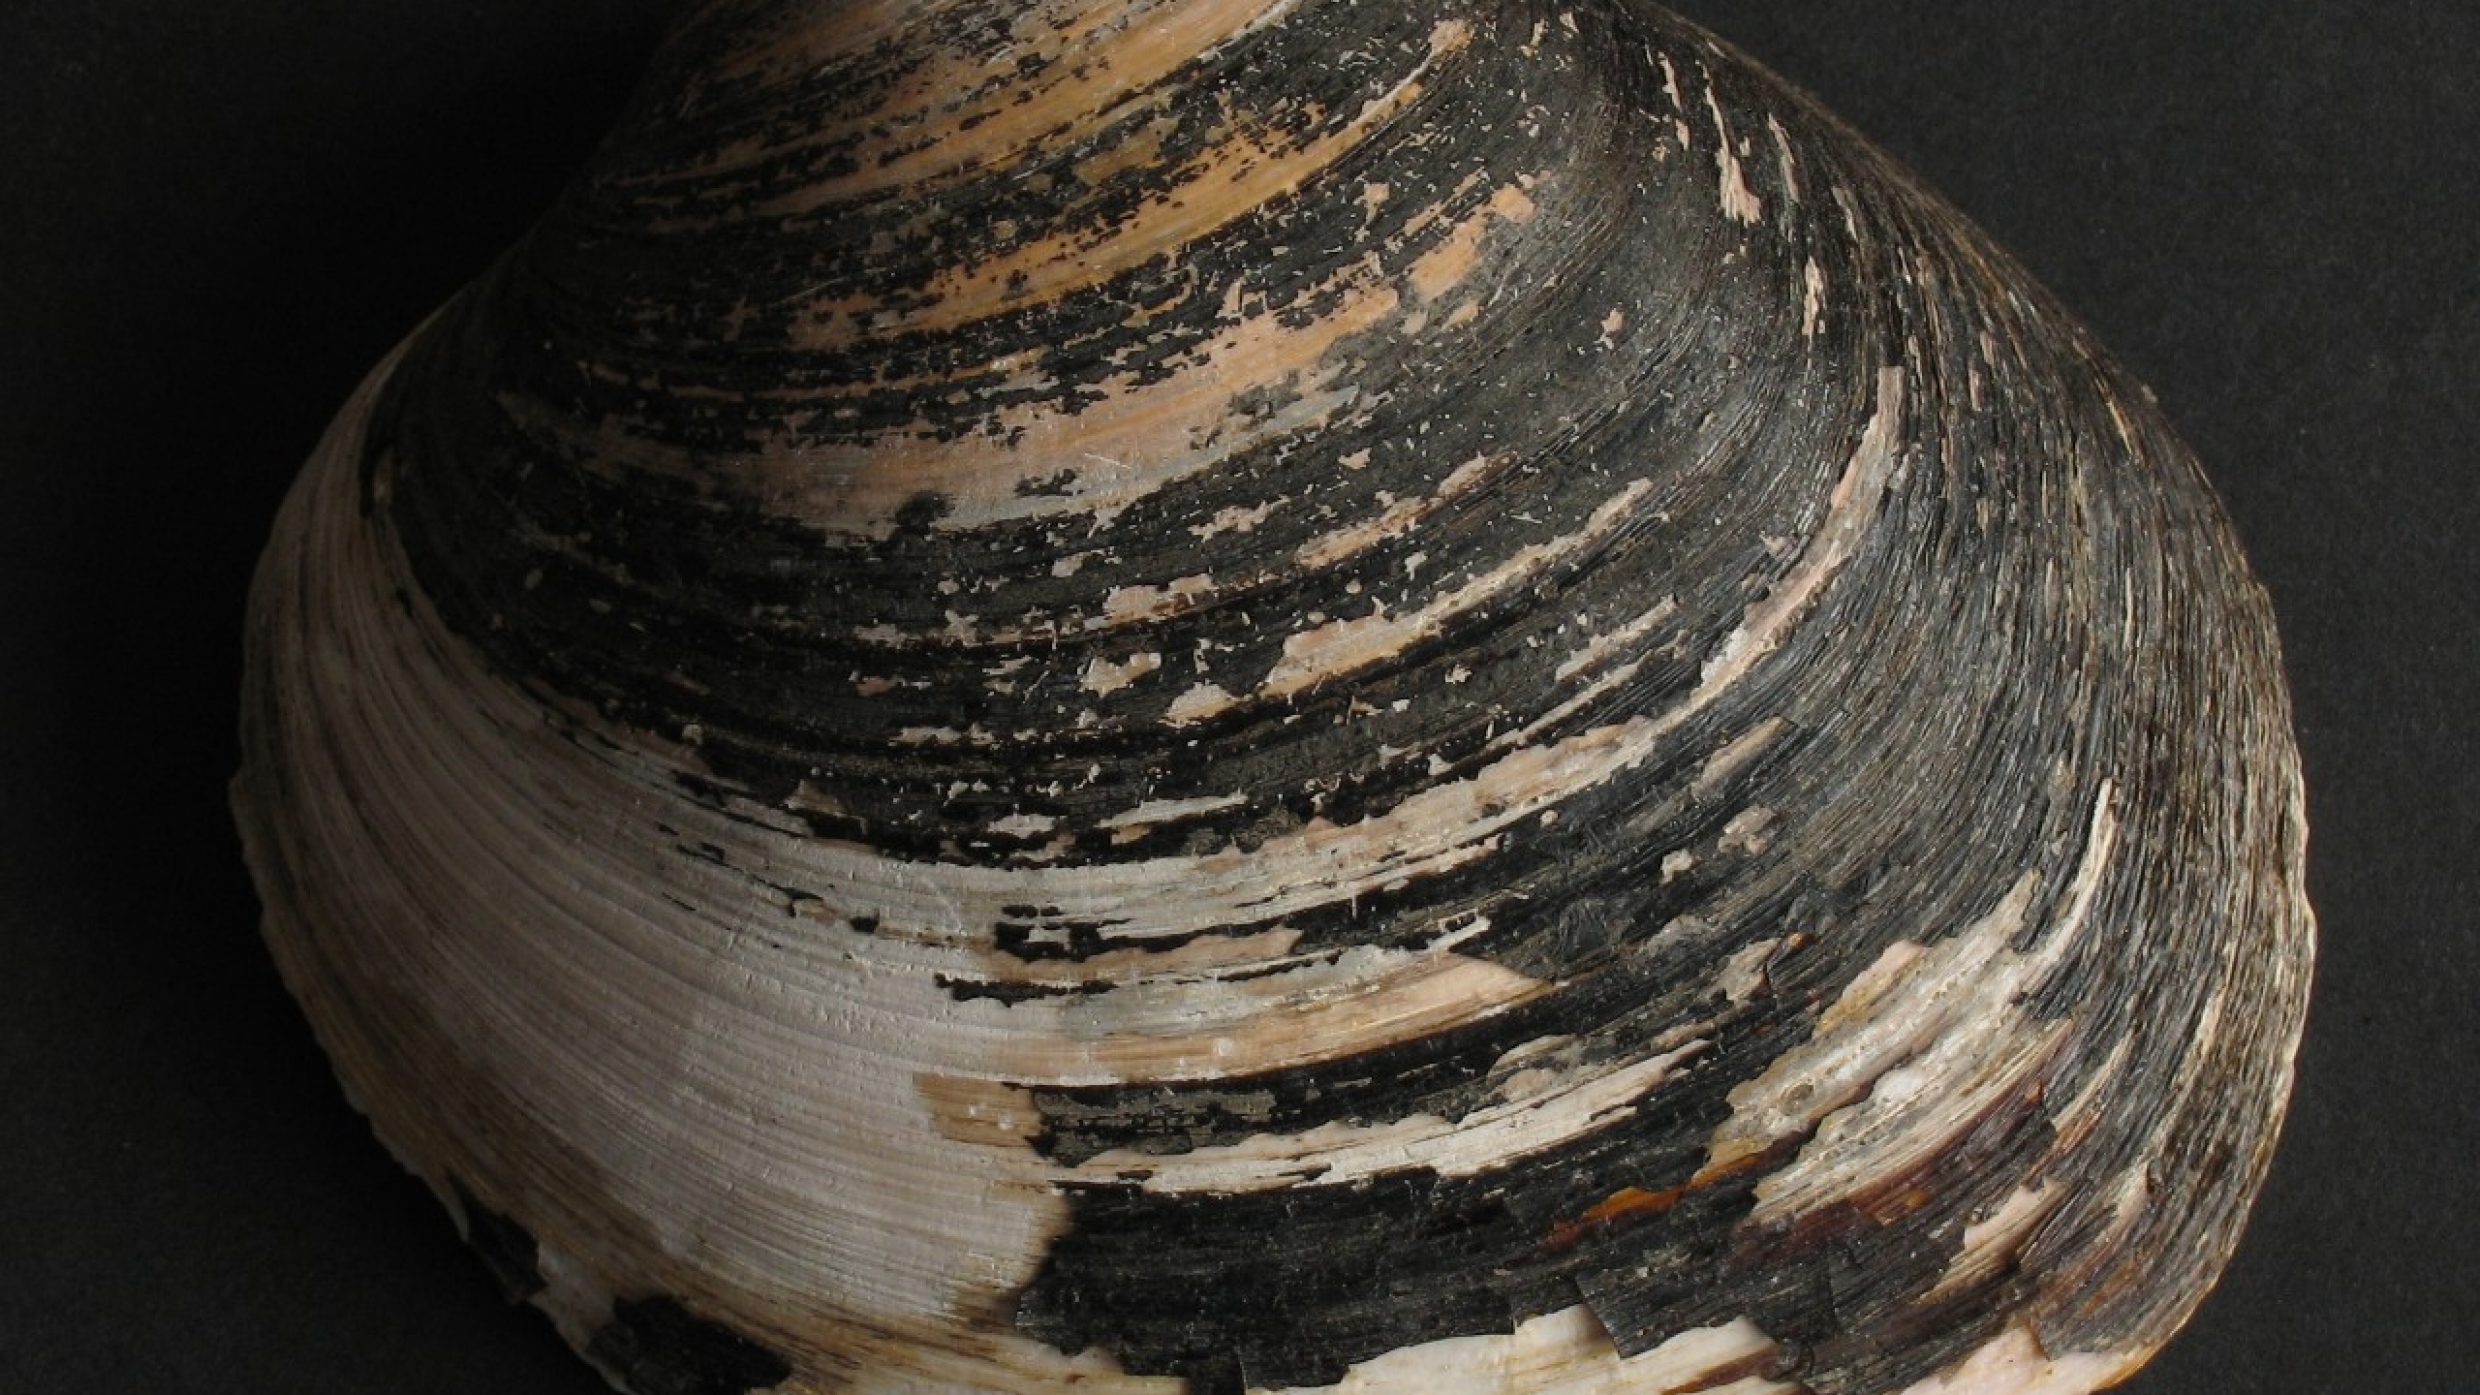 Das älteste bekannte Exemplar dieser Art wurde 507 Jahre alt, was sich anhand der Ringe in der Schale bestimmen liess. Die Muschel lebt vergraben im Schlick am Meeresboden des Atlantiks, der Nord- und Ostsee und kommt bis in etwa 100 Meter Tiefe vor.